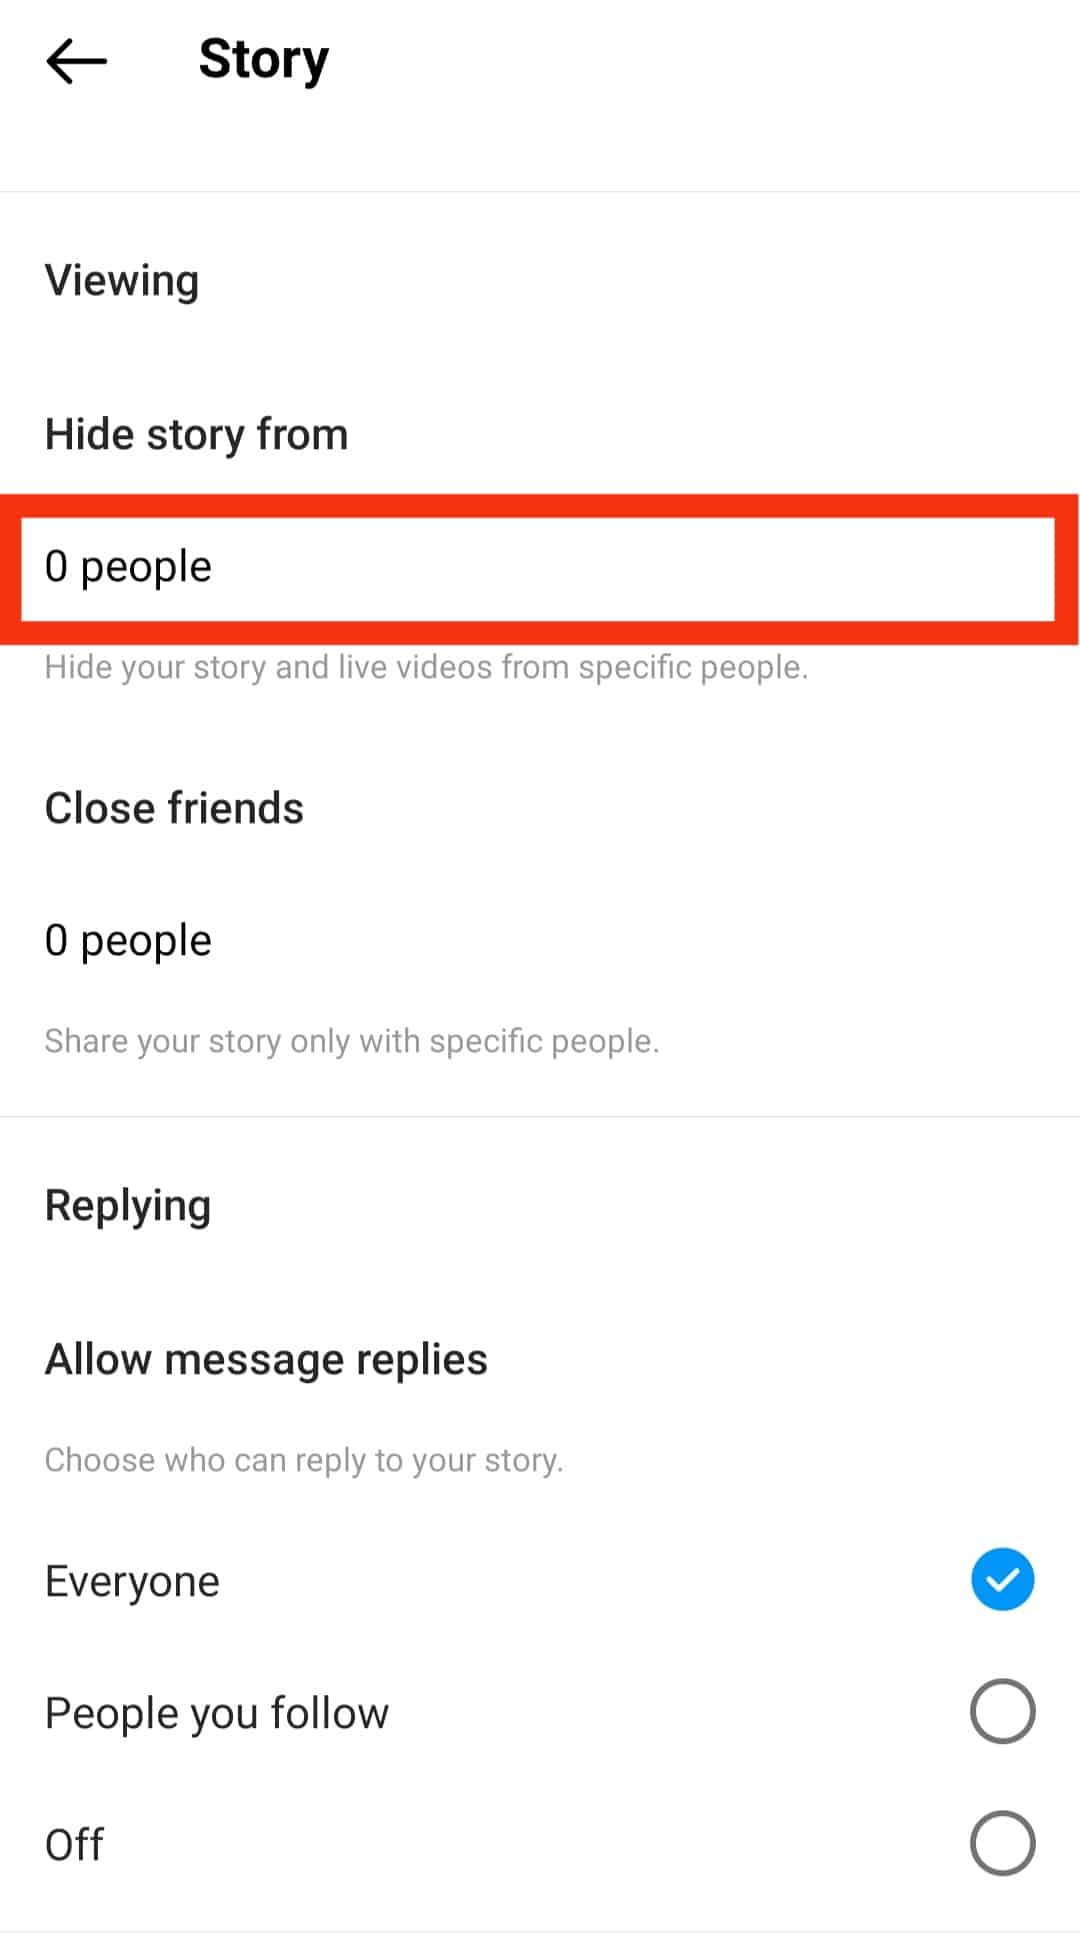 Cómo crear una historia privada en Instagram?